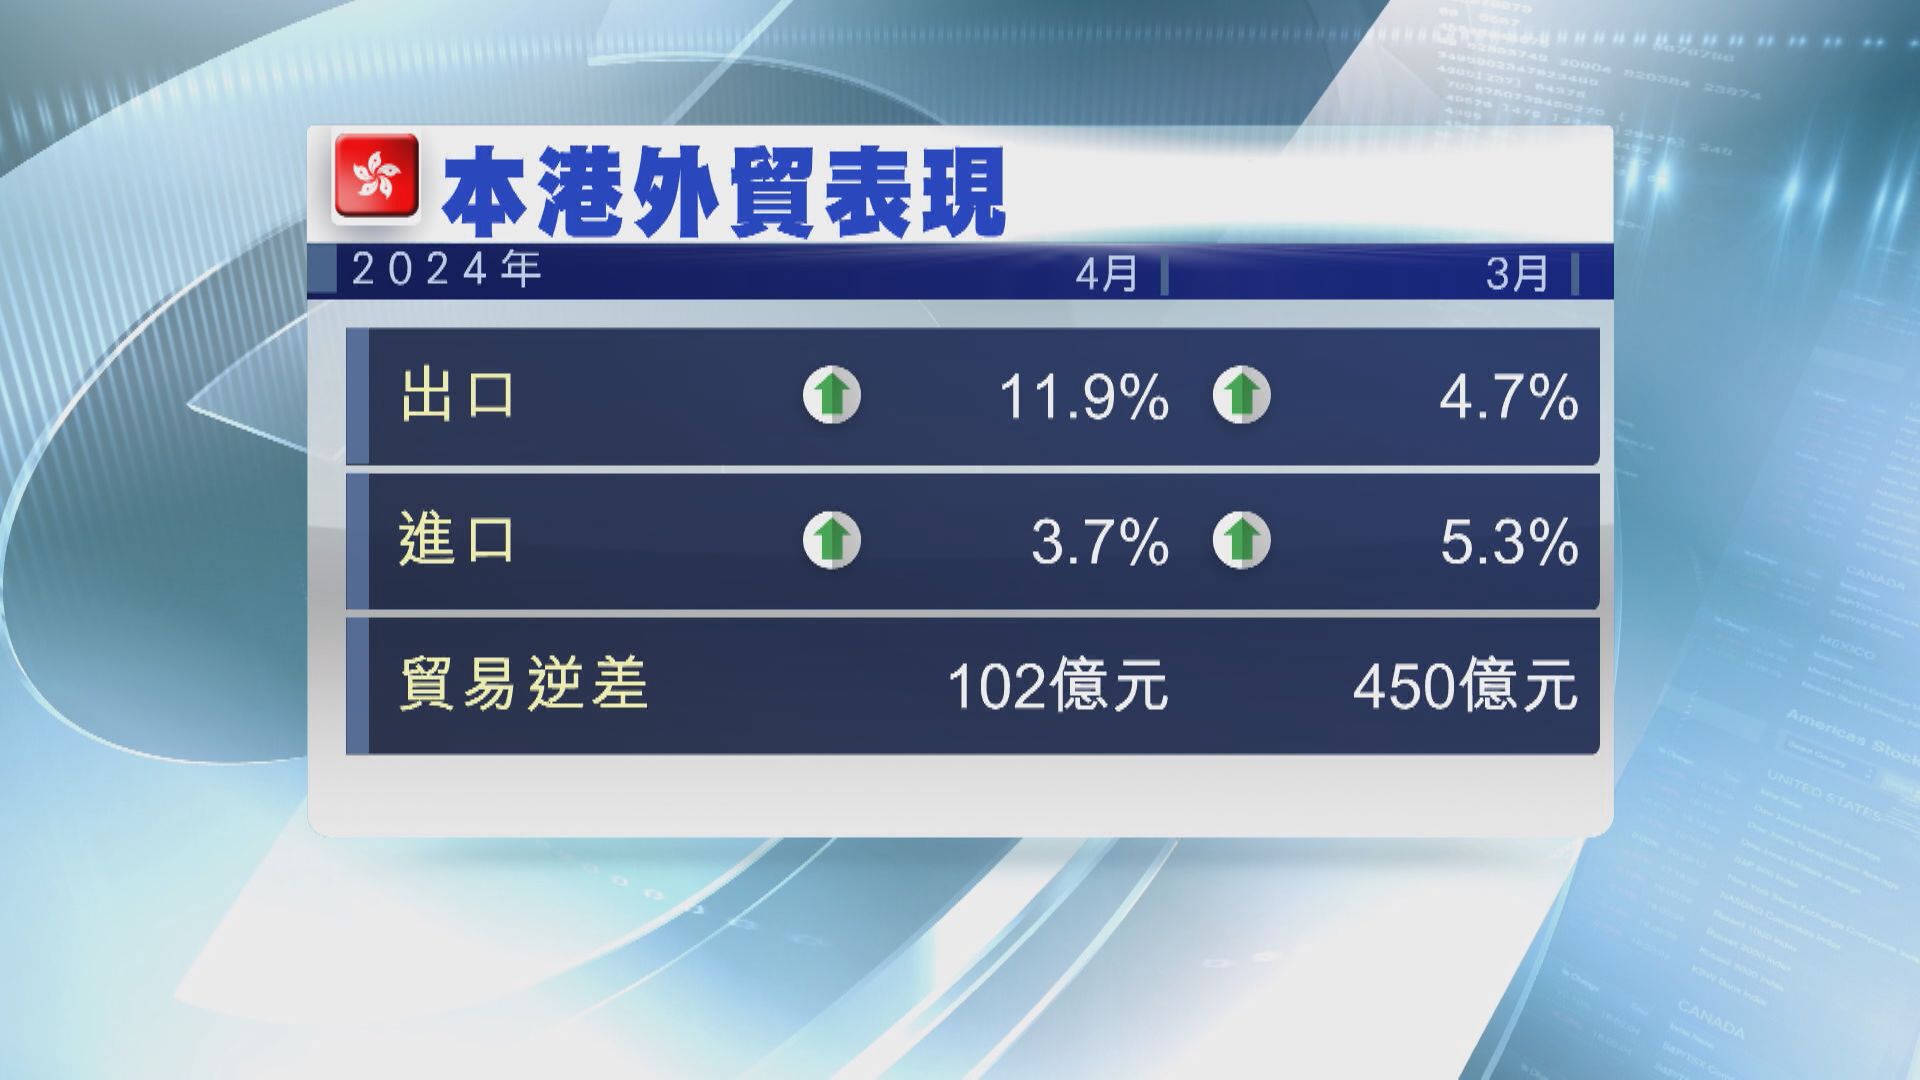 【外貿表現】本港4月出口升幅擴大至11.9% 勝預期